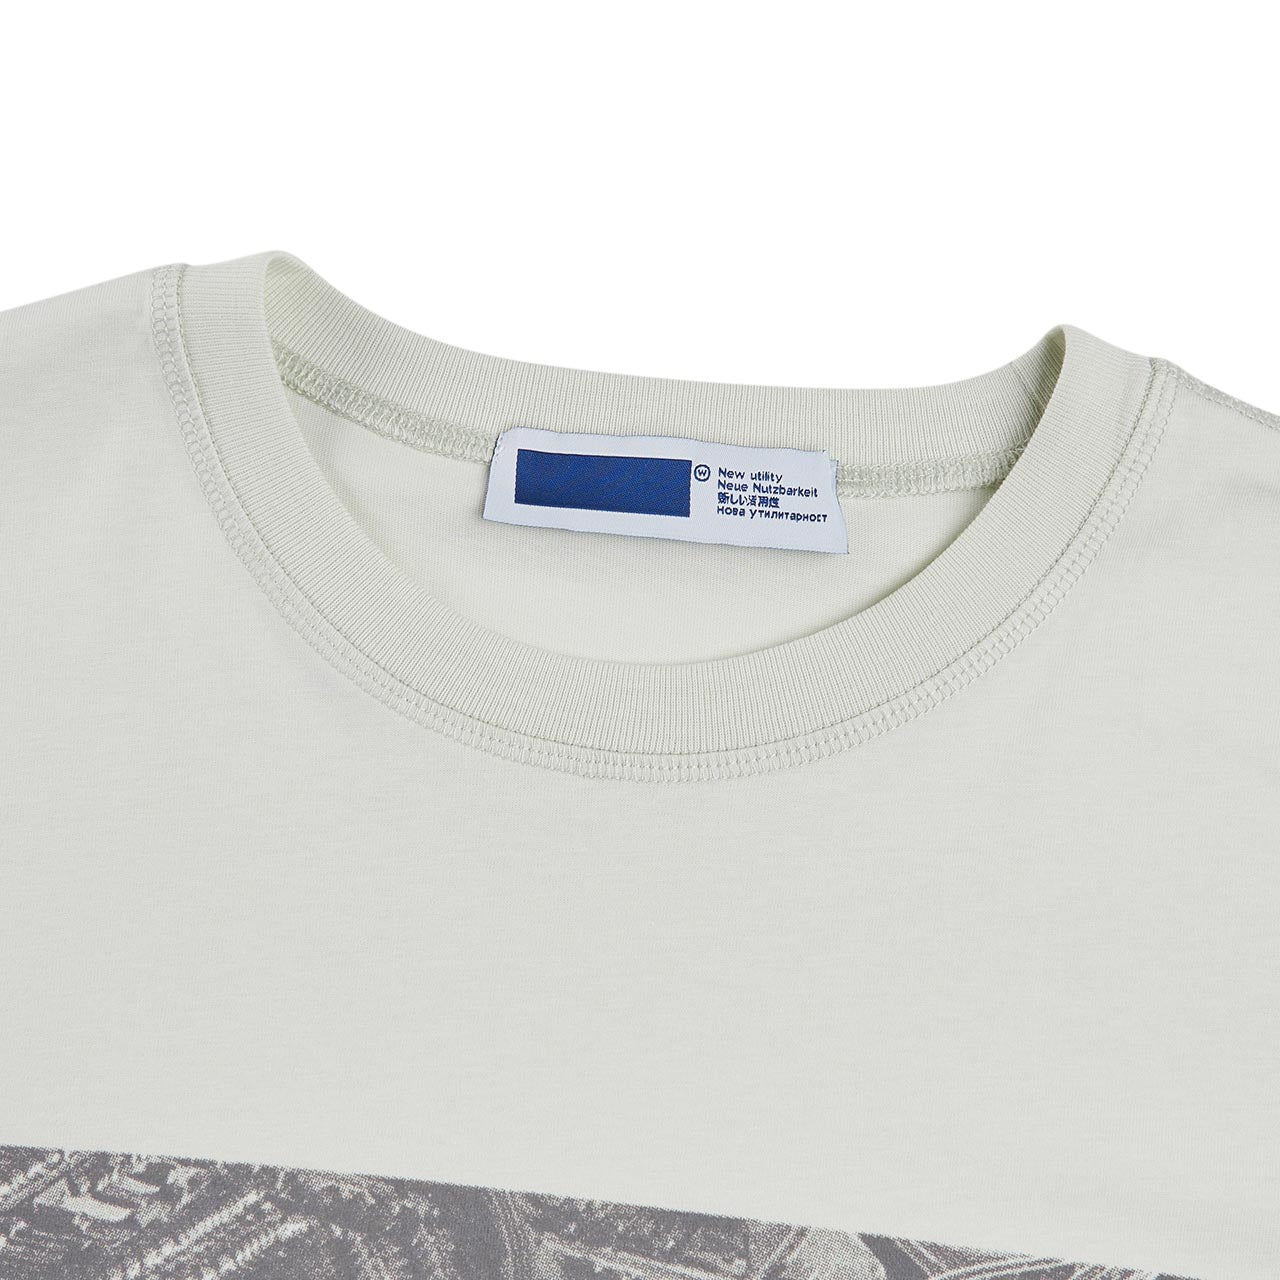 affxwrks stasis t-shirt (light mint)